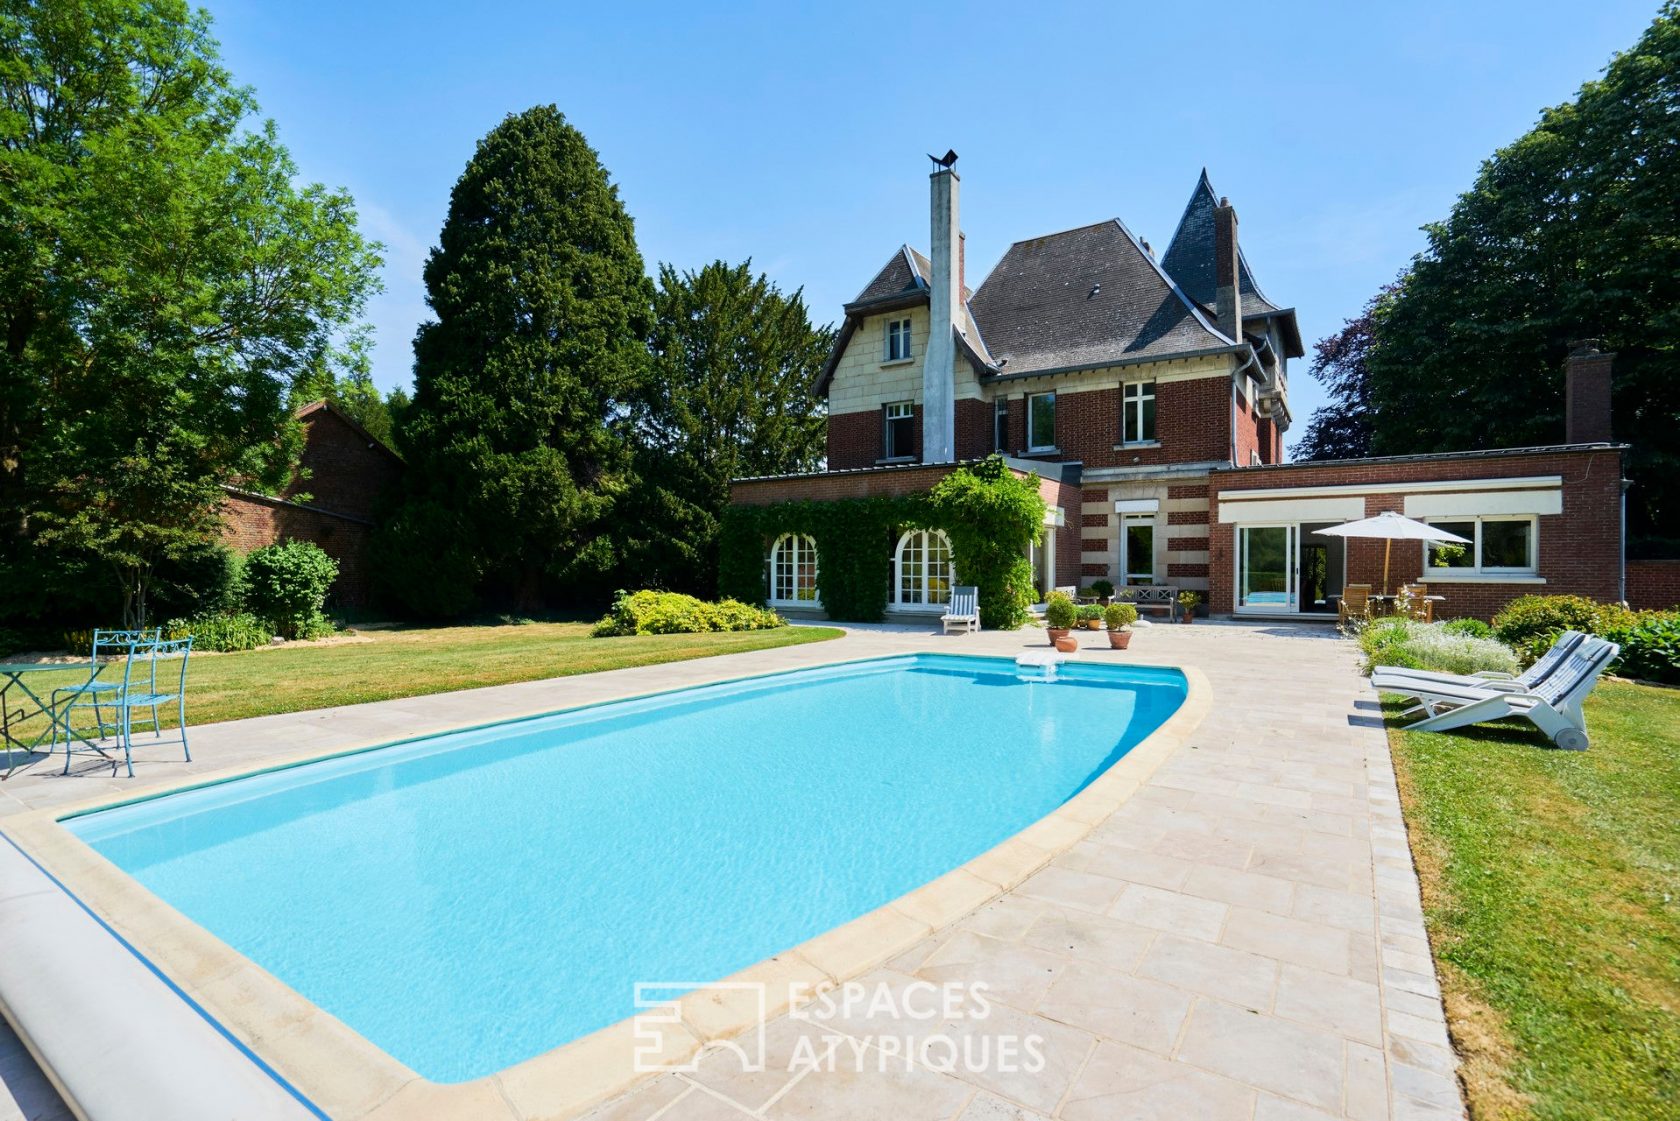 Maison bourgeoise avec piscine et parc arboré